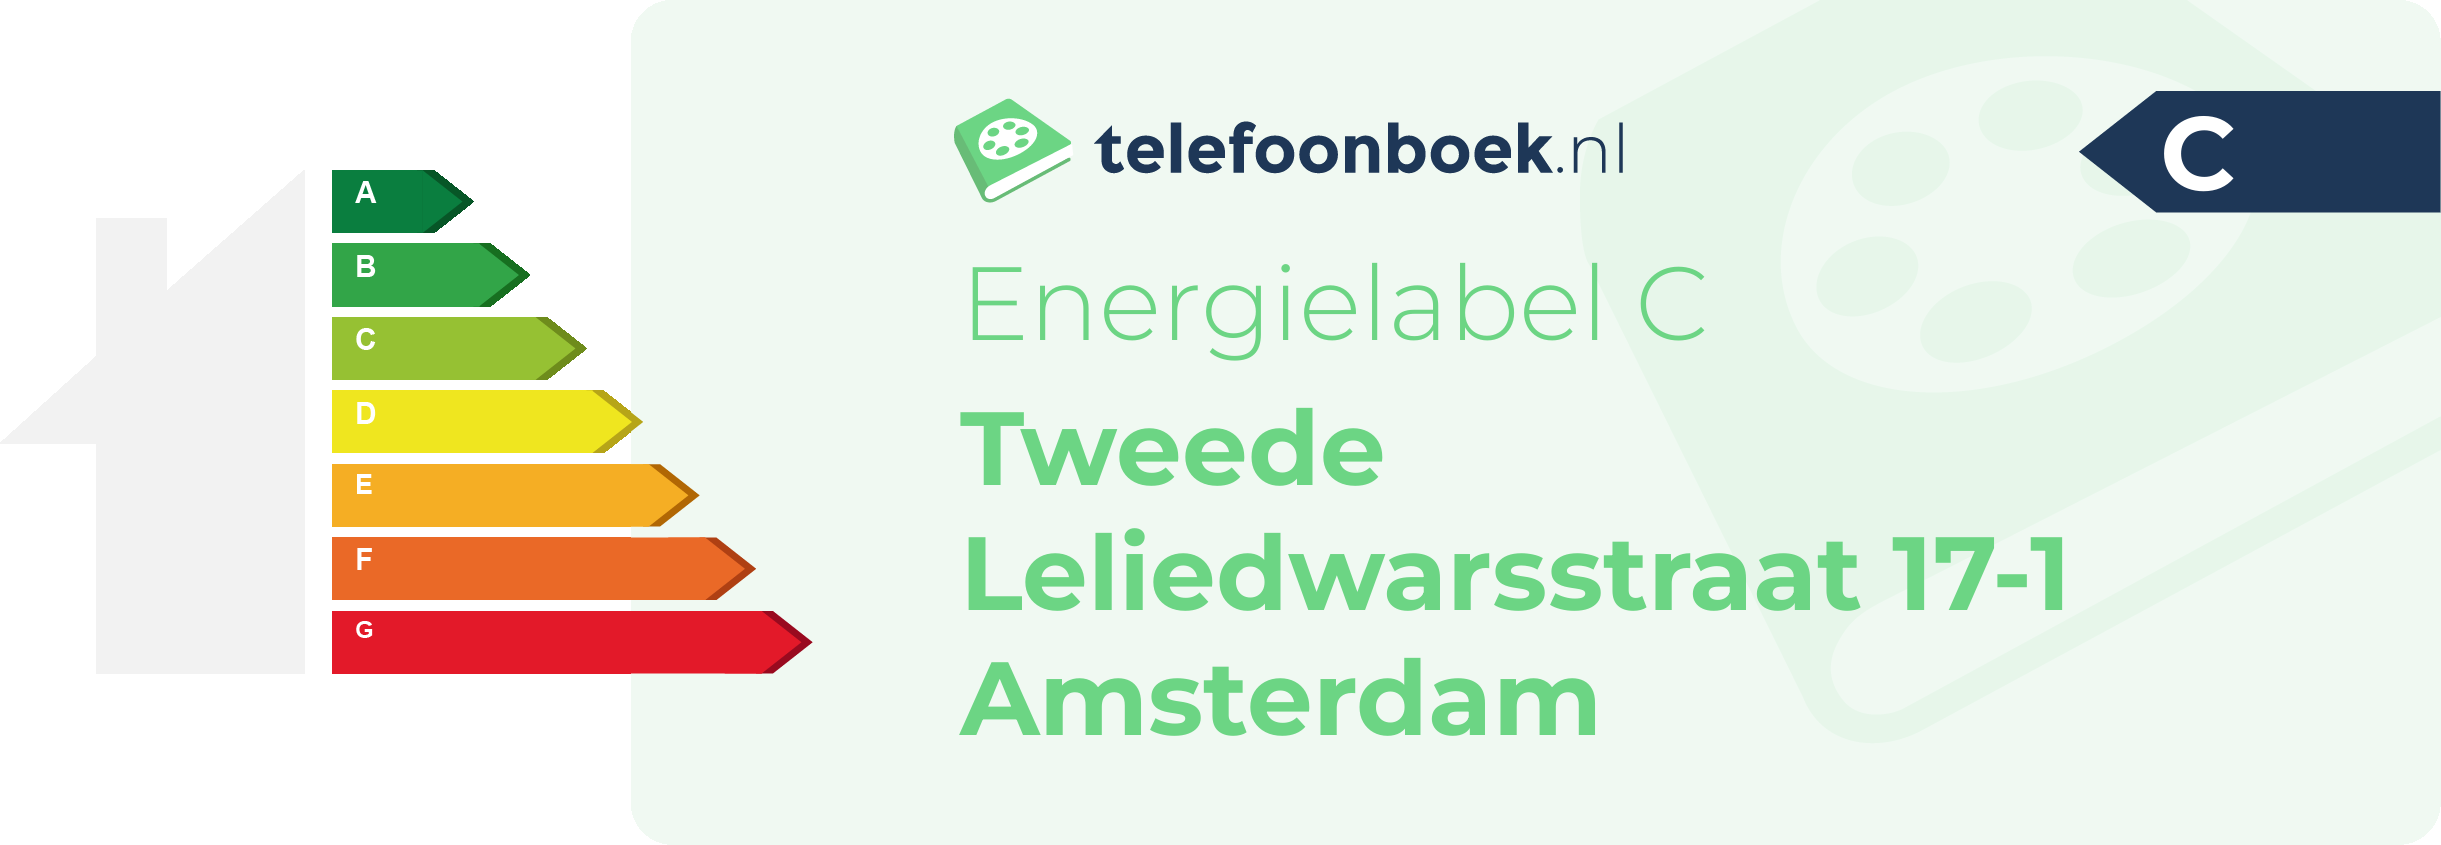 Energielabel Tweede Leliedwarsstraat 17-1 Amsterdam